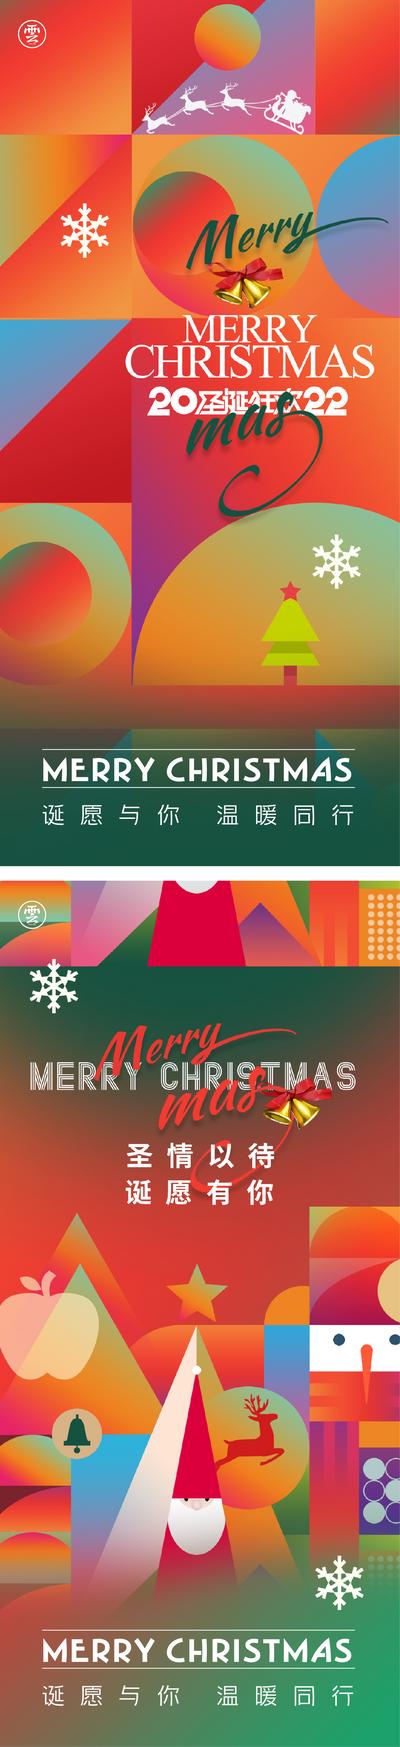 南门网 海报 公历节日 圣诞节 平安夜 圣诞老人 麋鹿 雪花 色块 扁平化